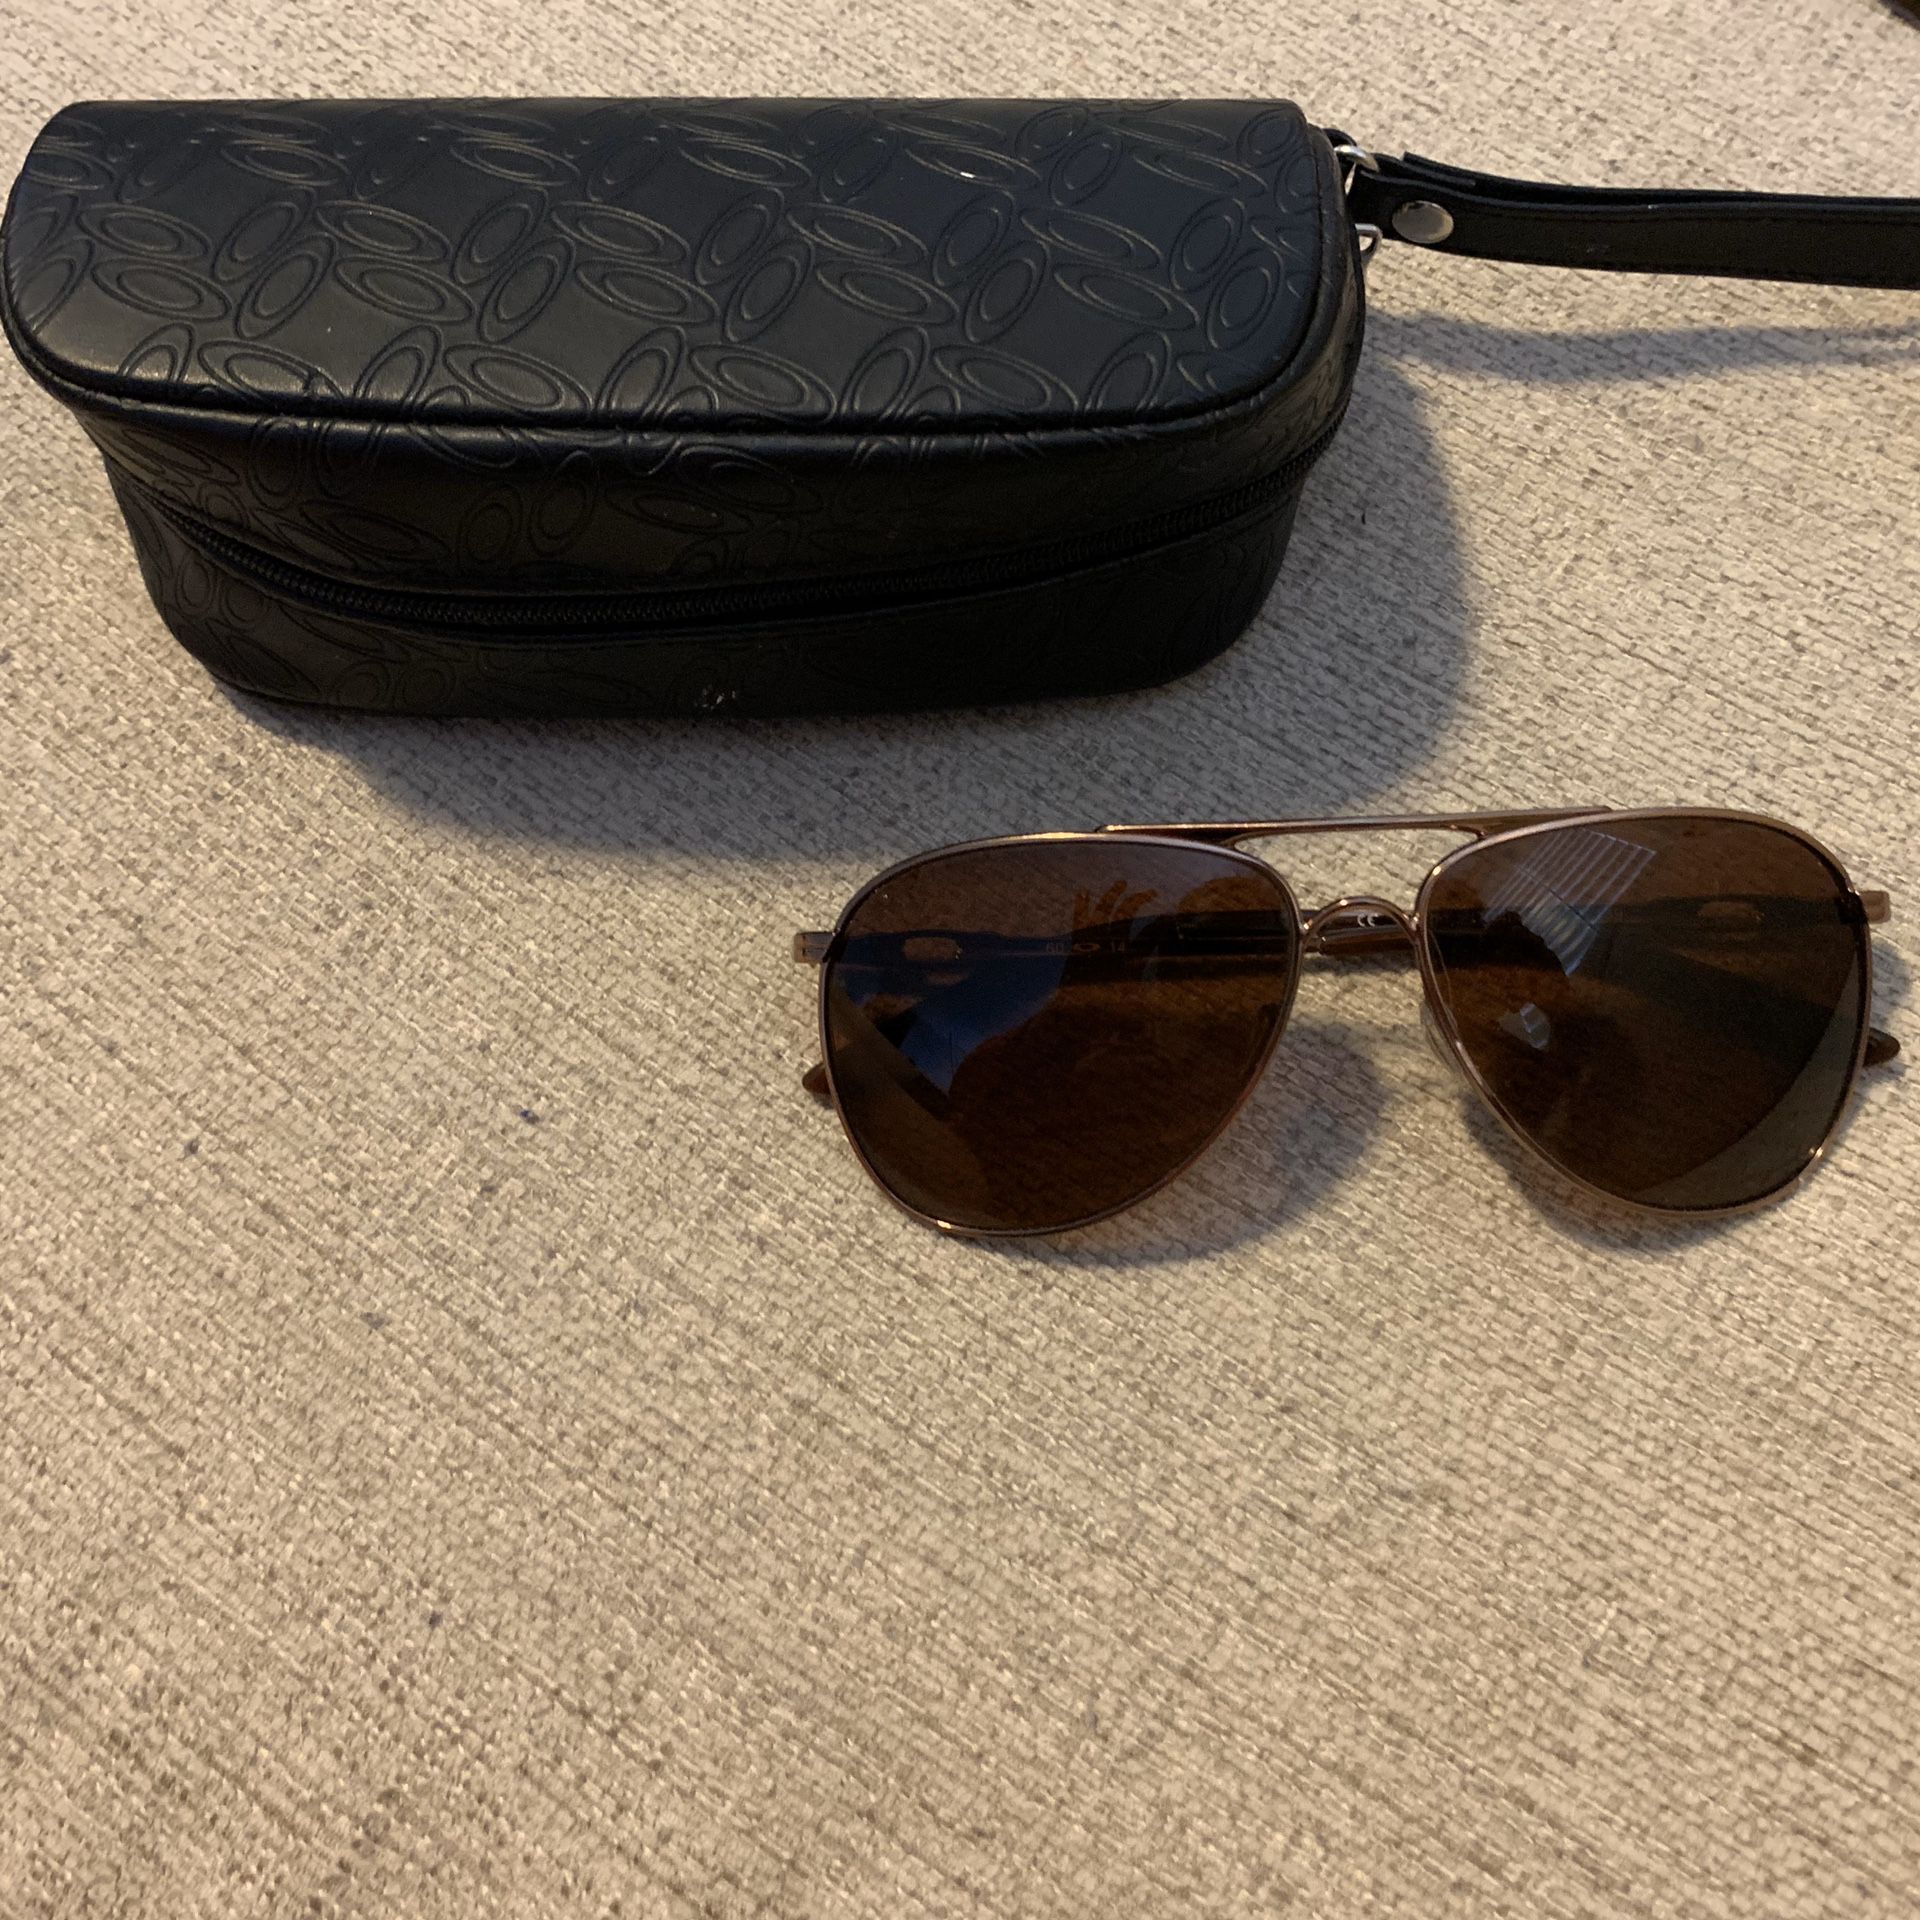 Oakley Daisy Chain polarized sunglasses